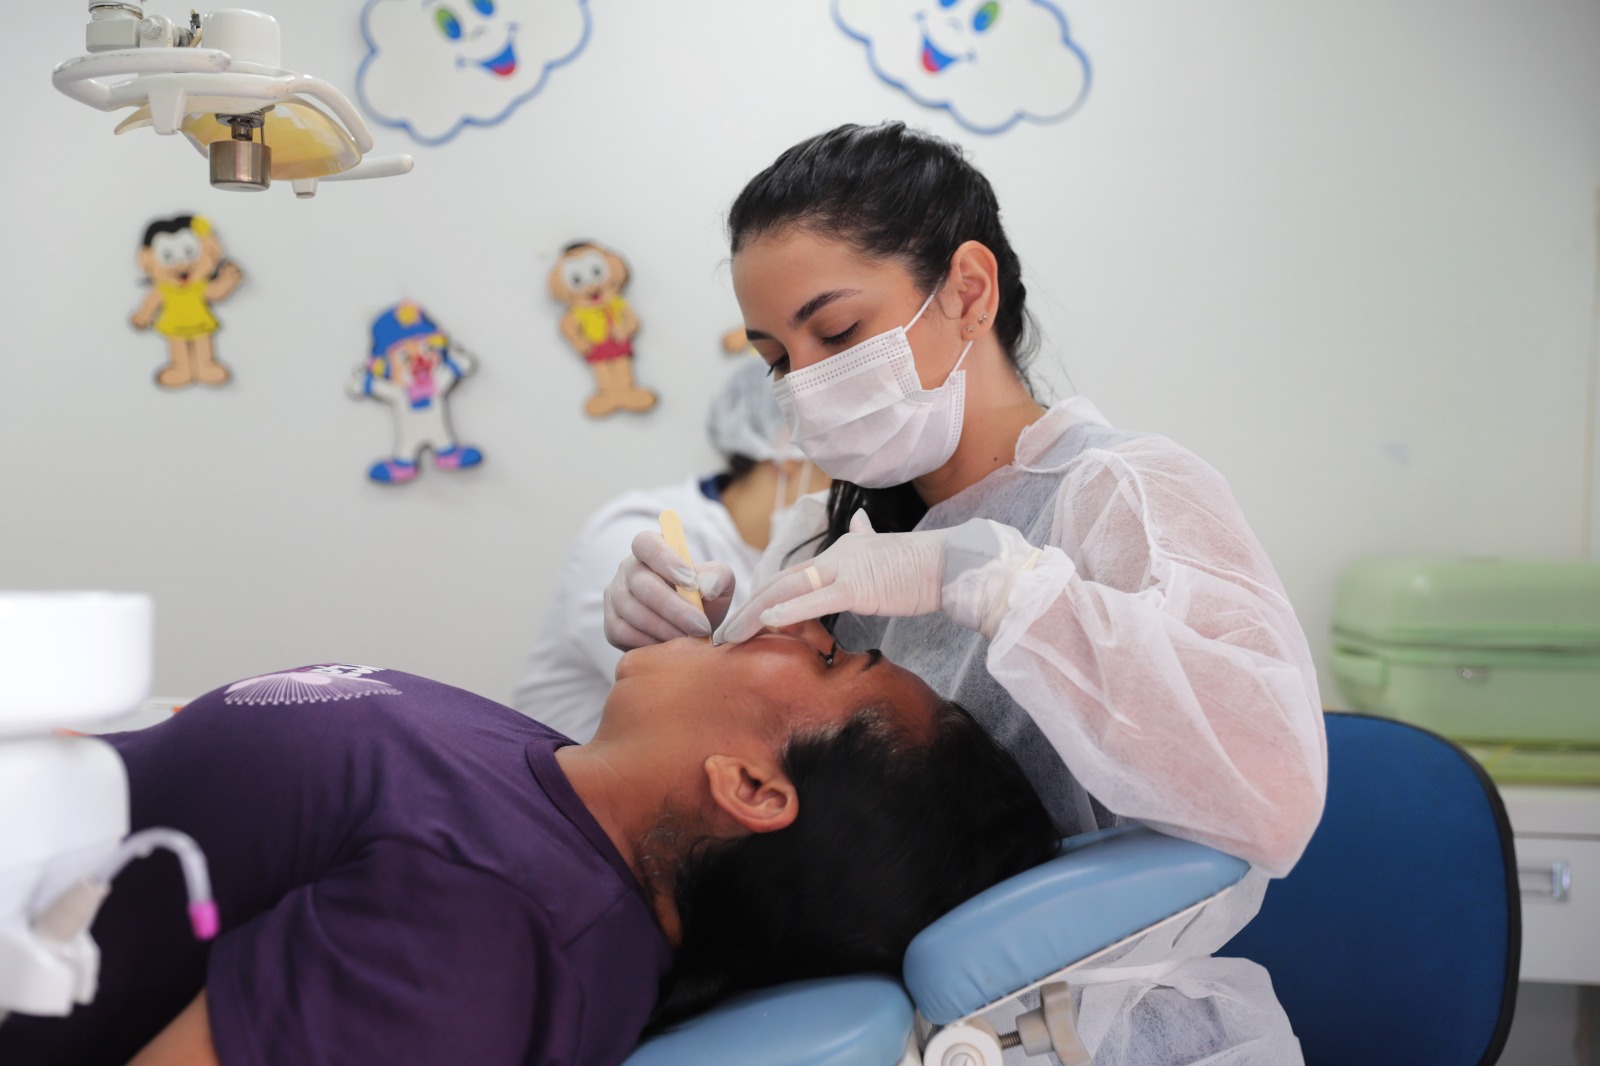 As mulheres passaram pela avaliação de uma profissional, fizeram uma limpeza e receberam orientações sobre como manter os cuidados com a saúde dos dentes